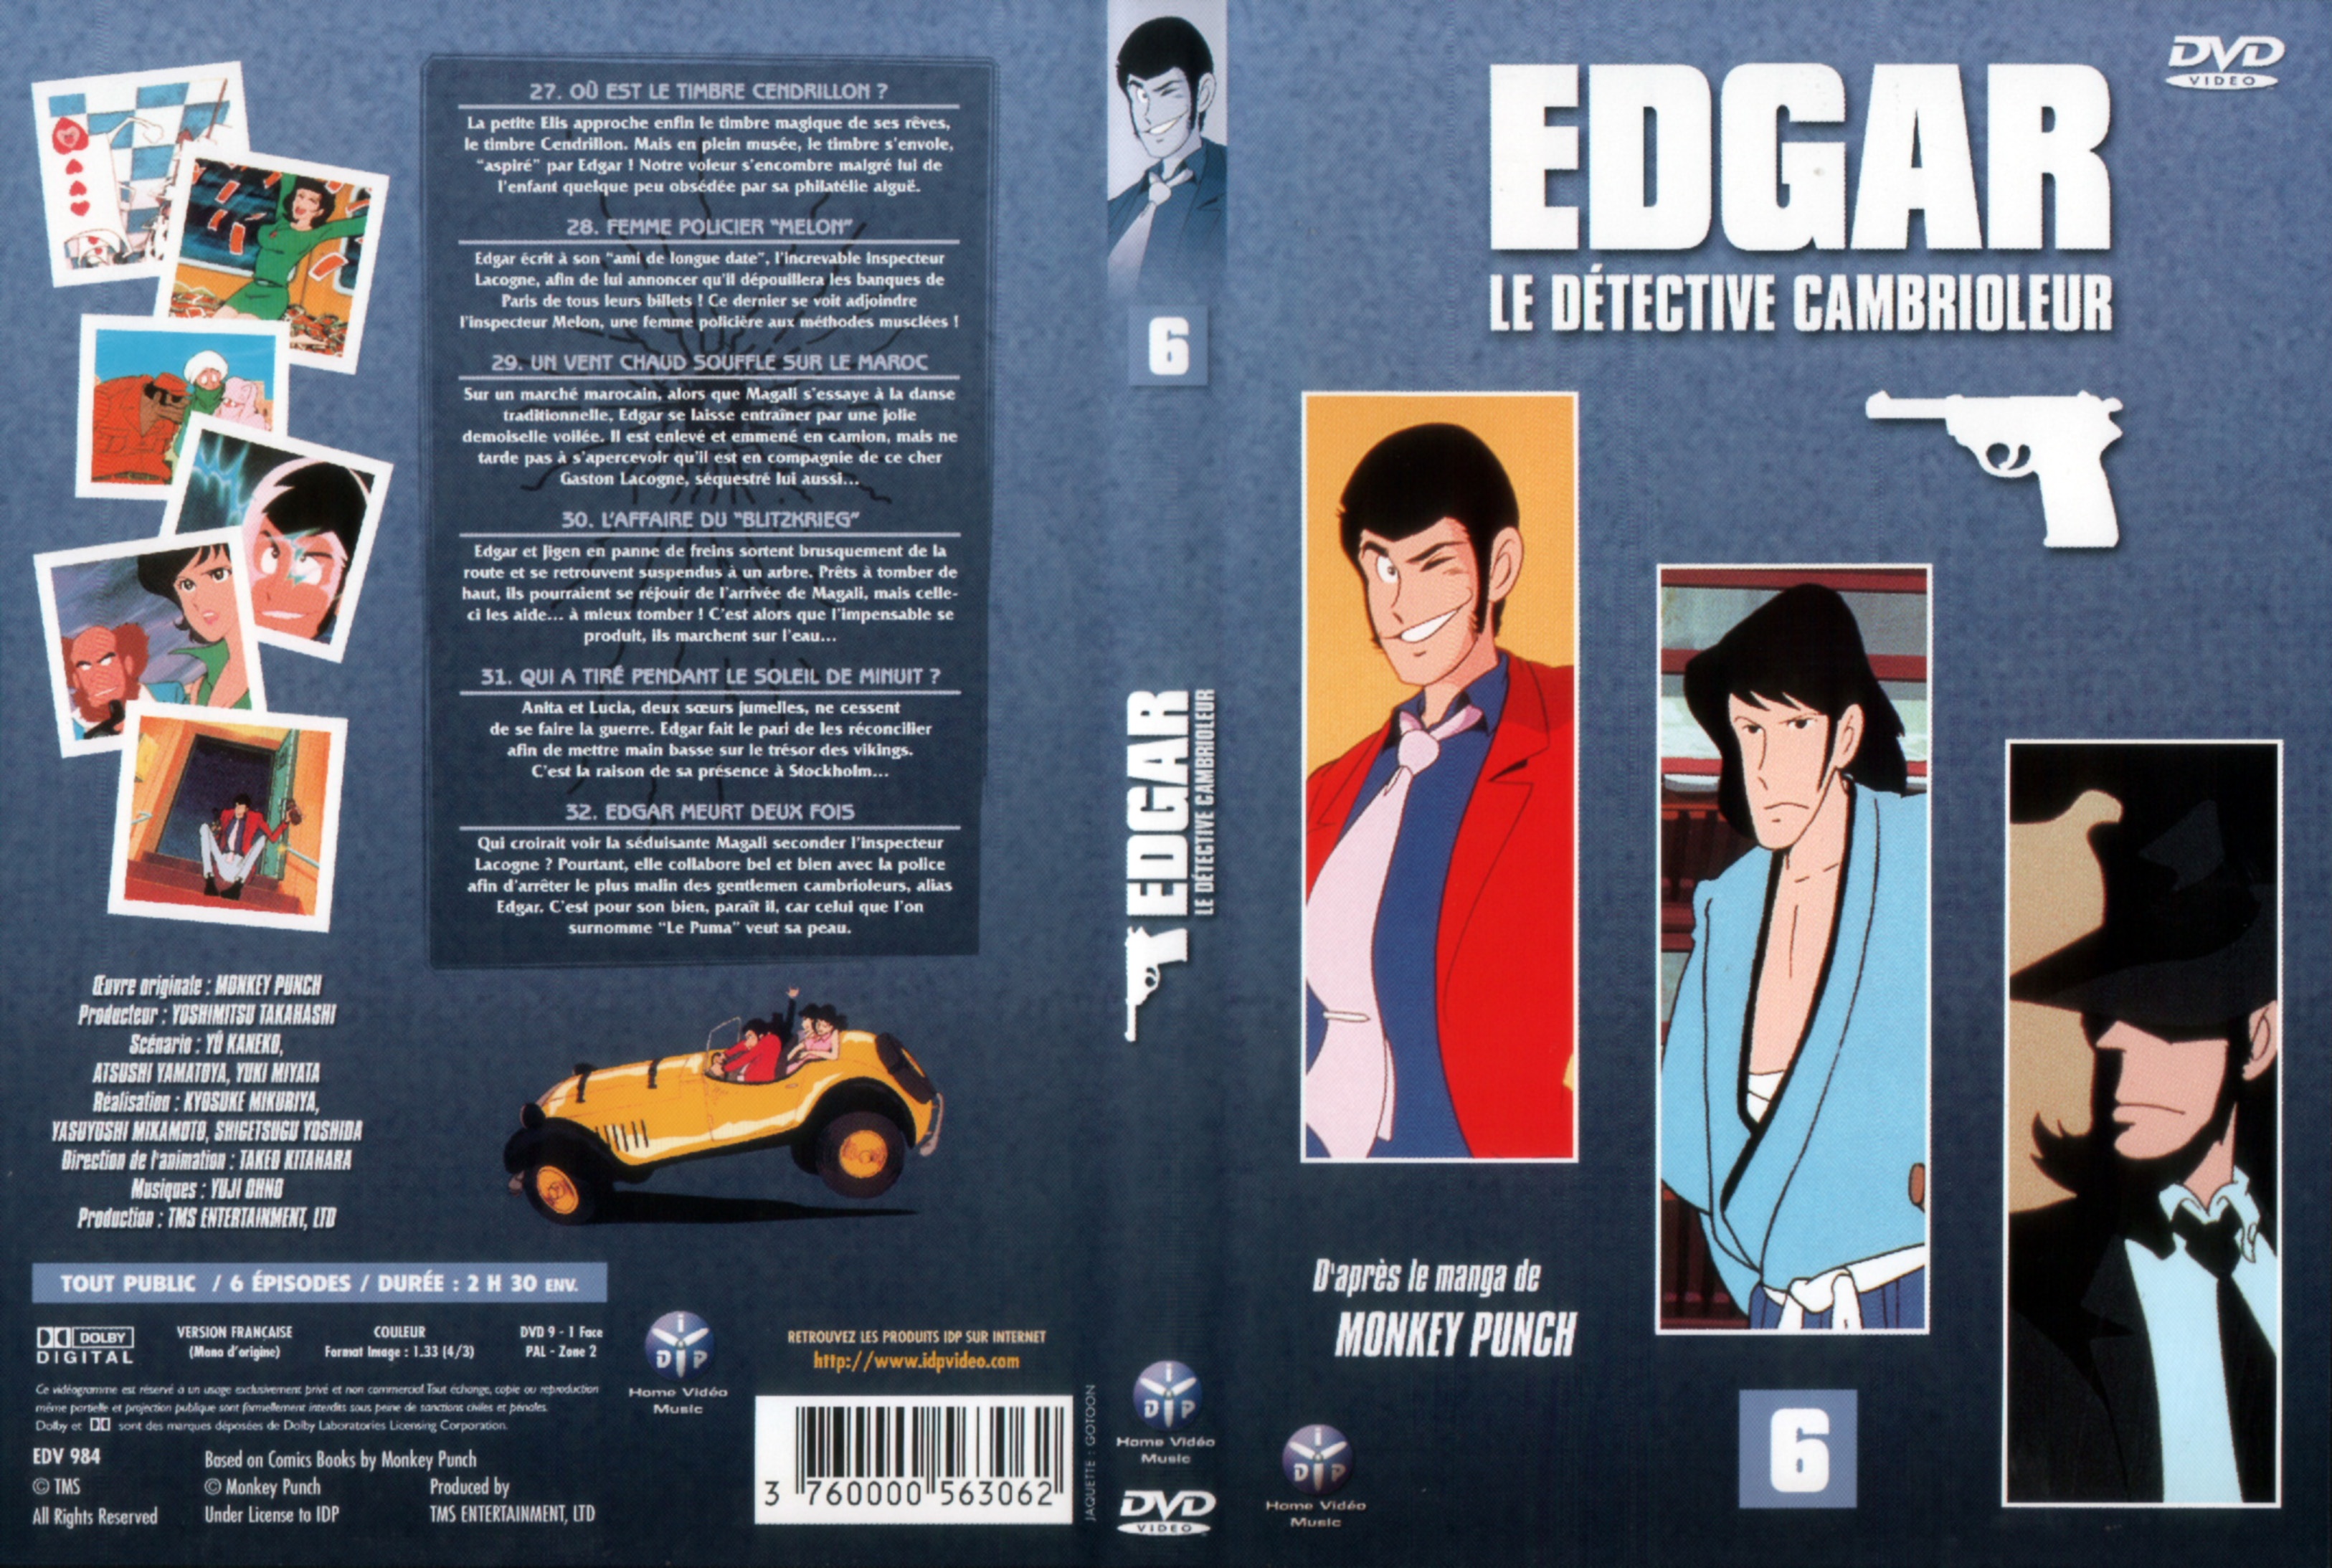 Jaquette DVD Edgar le detective cambrioleur DVD 06